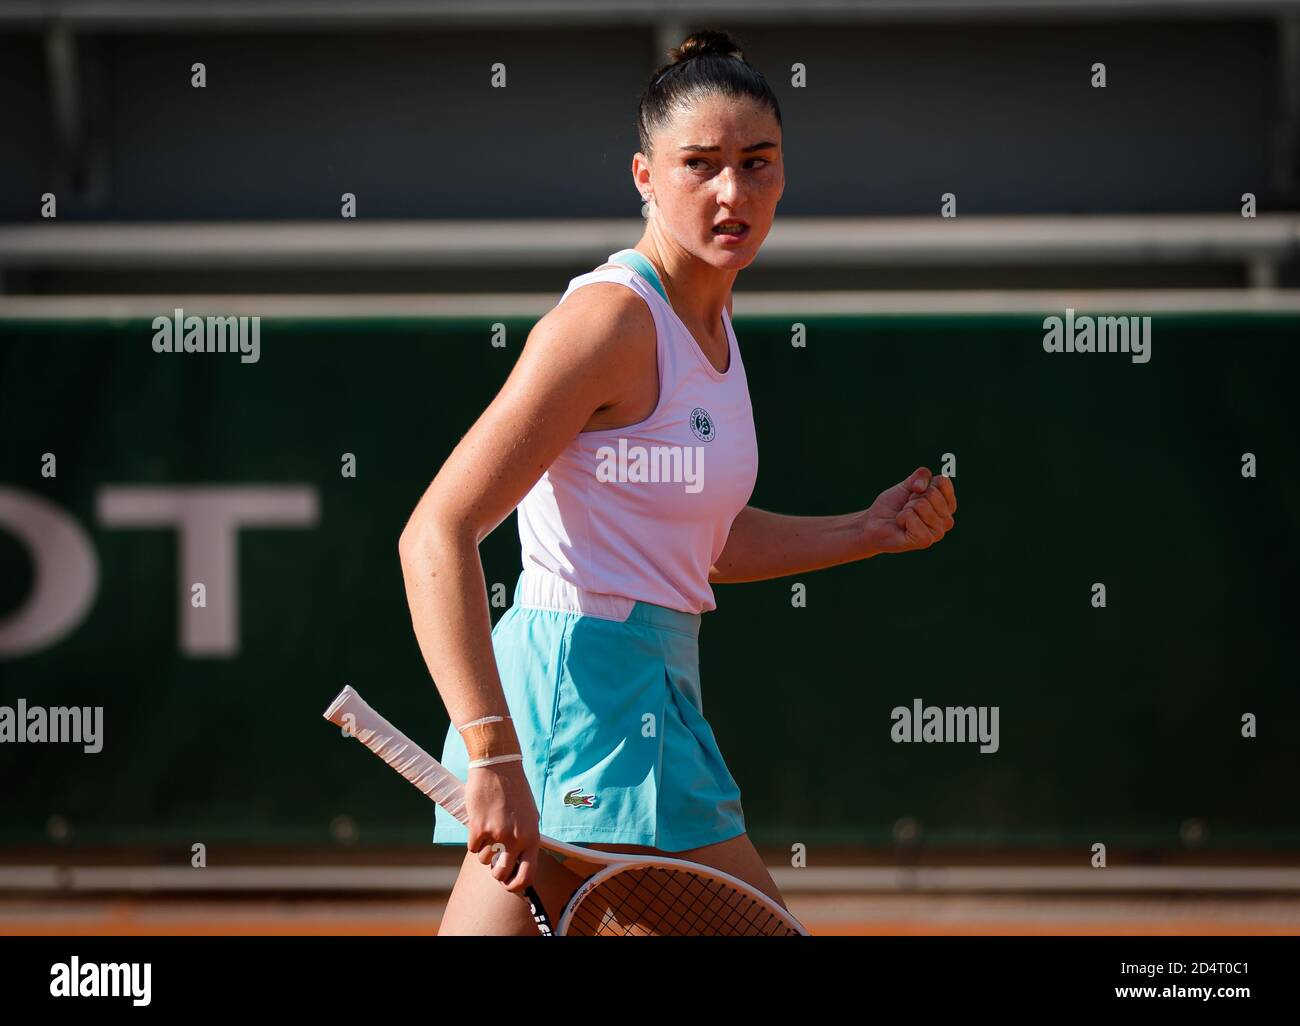 lsa Jacquemot von Frankreich im Einsatz gegen Alina Charaeva von Russland während des Juniors Finale der Roland Garros 2020, Grand Slam Tennisturnier, Stockfoto